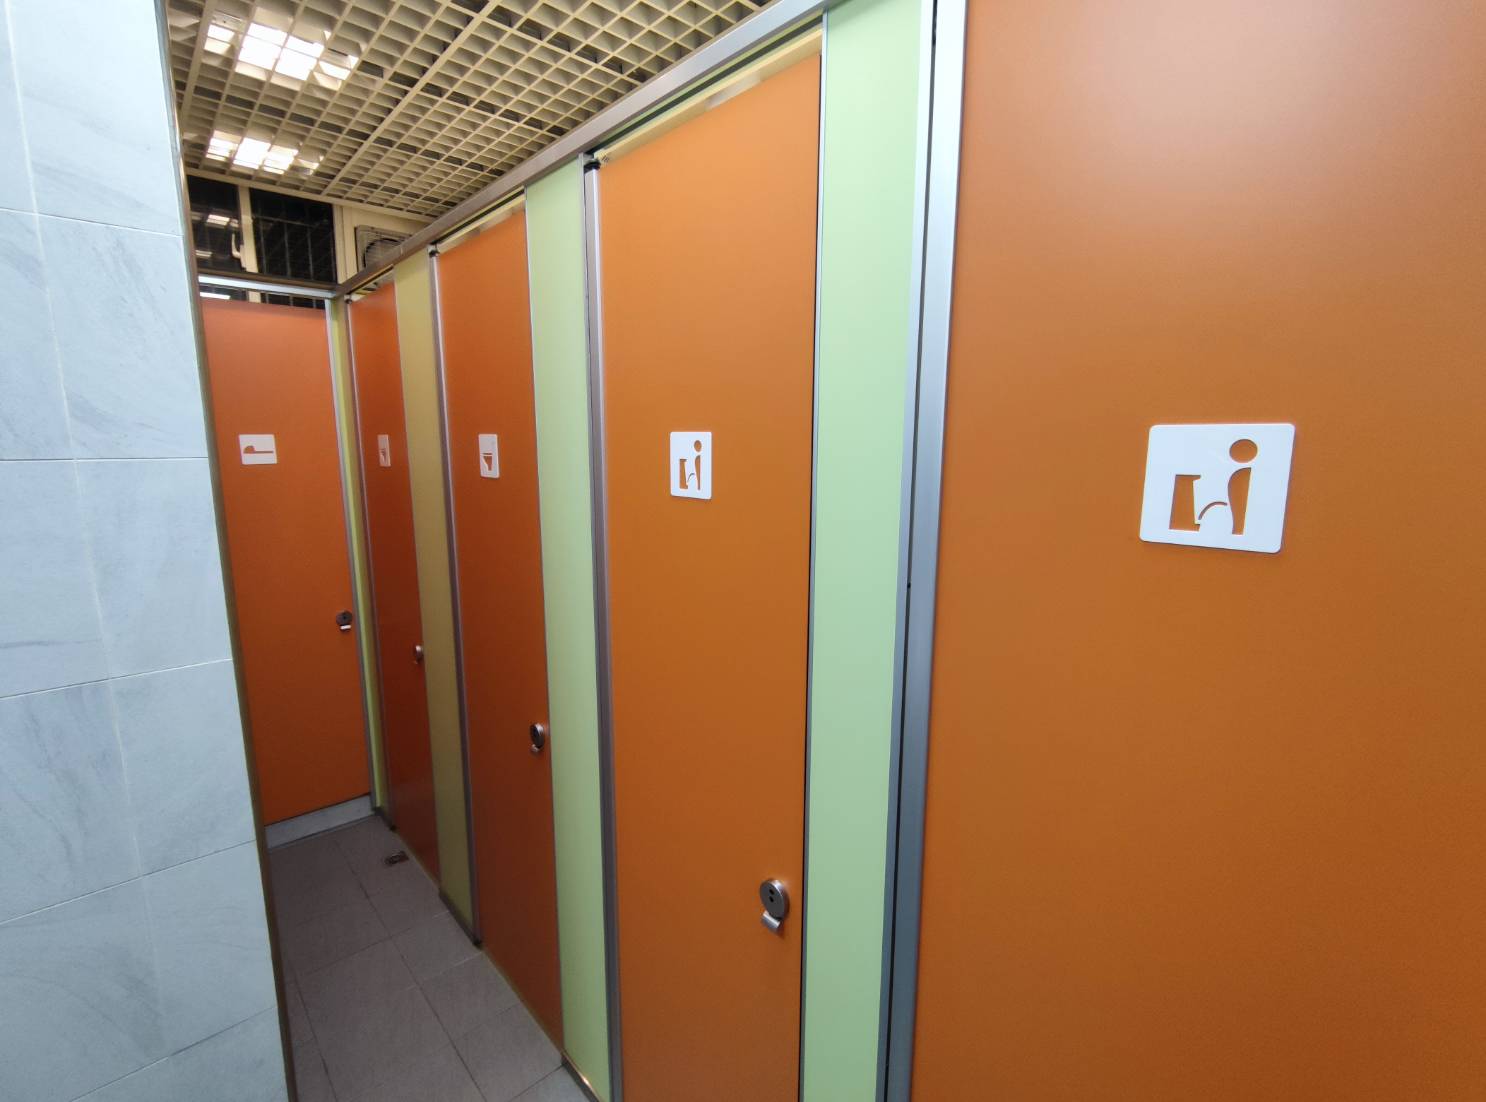 廁所以便器種類區分個別獨立空間